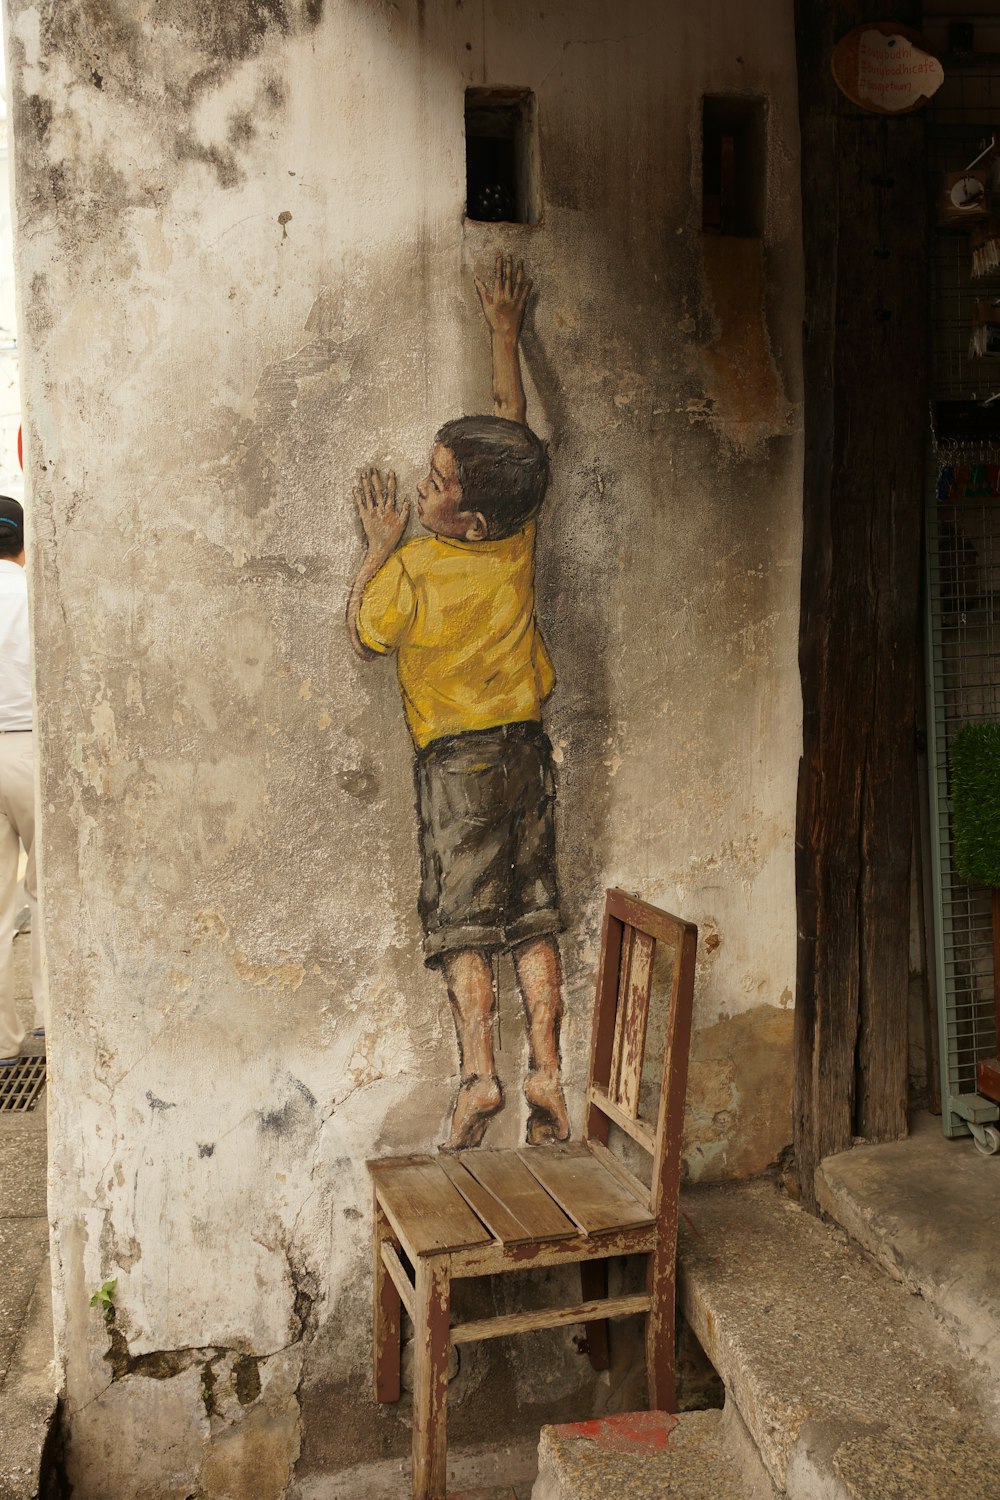 ragazzo in piedi sulla sedia di legno che raggiunge il foro sulla pittura murale di cemento